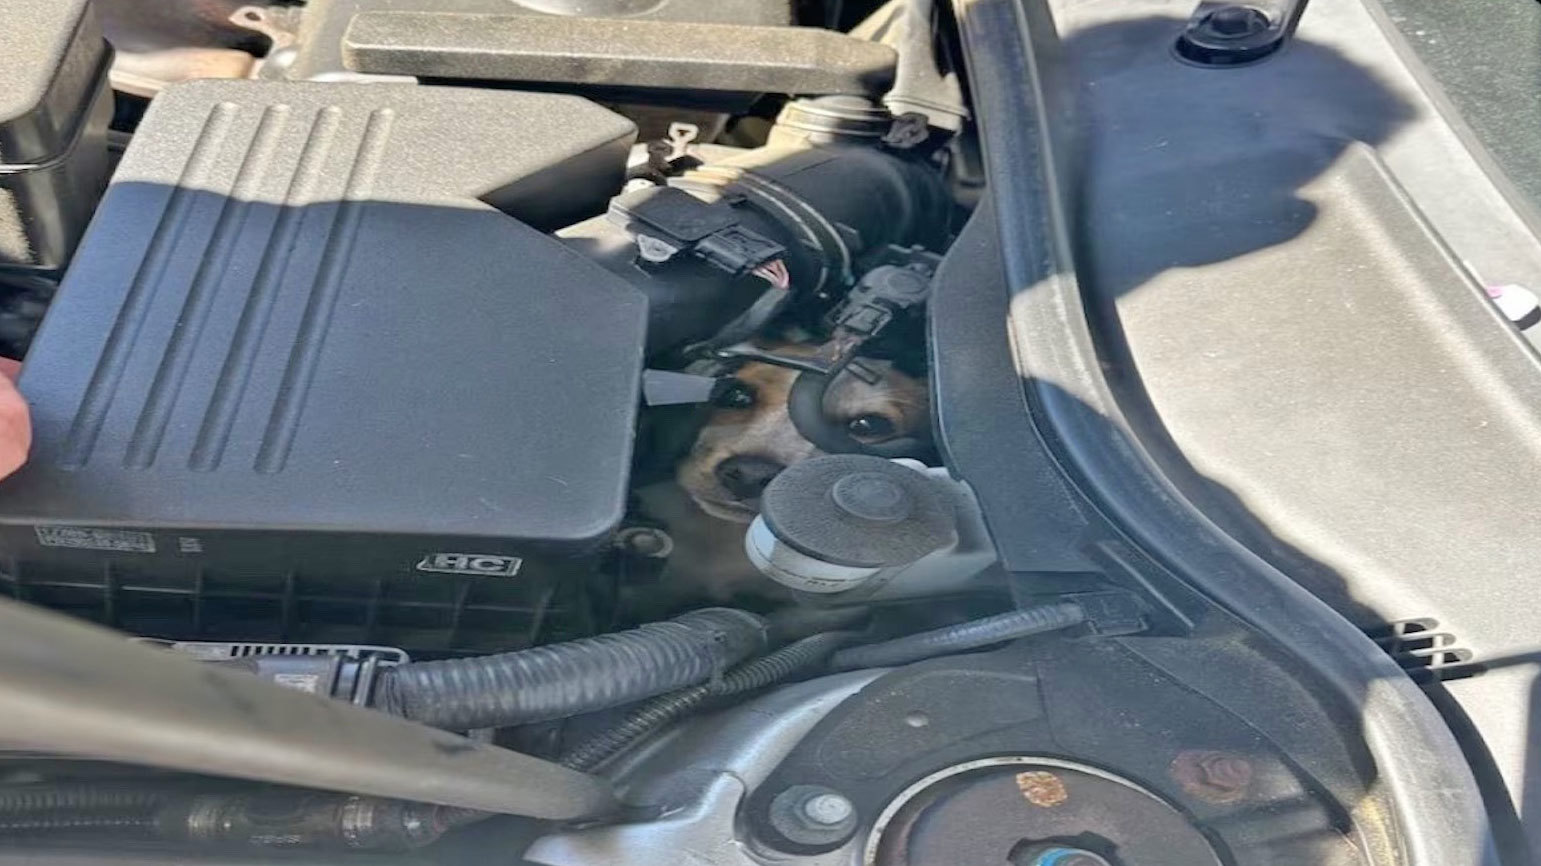 Un equipo de bomberos en los EE. UU. rescató a un perro después de que quedó atrapado en el compartimiento del motor de un automóvil.